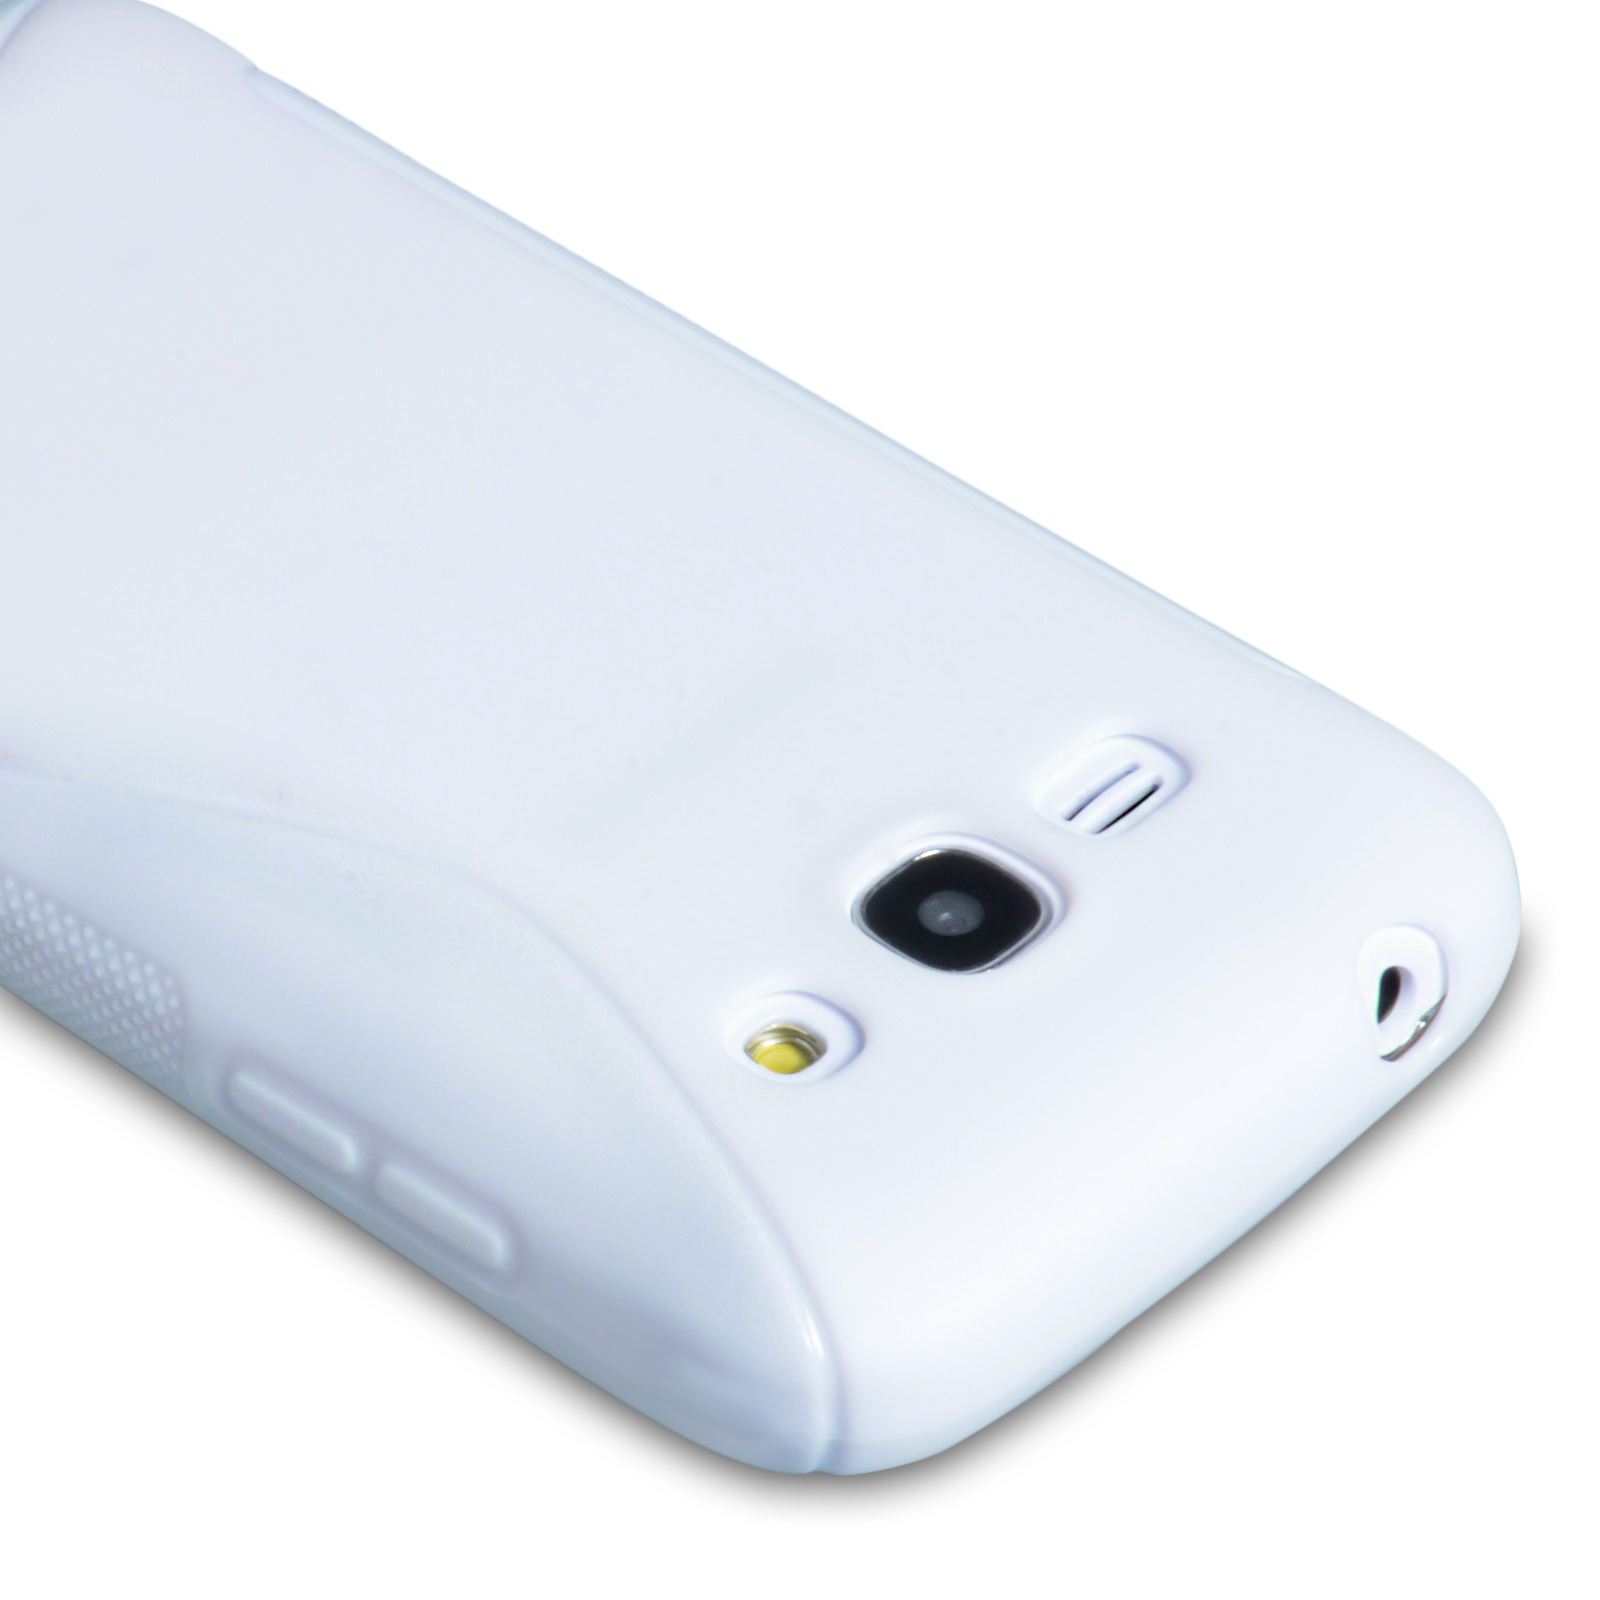 Caseflex Samsung Galaxy Ace 3 Silicone Gel S-Line Case - White